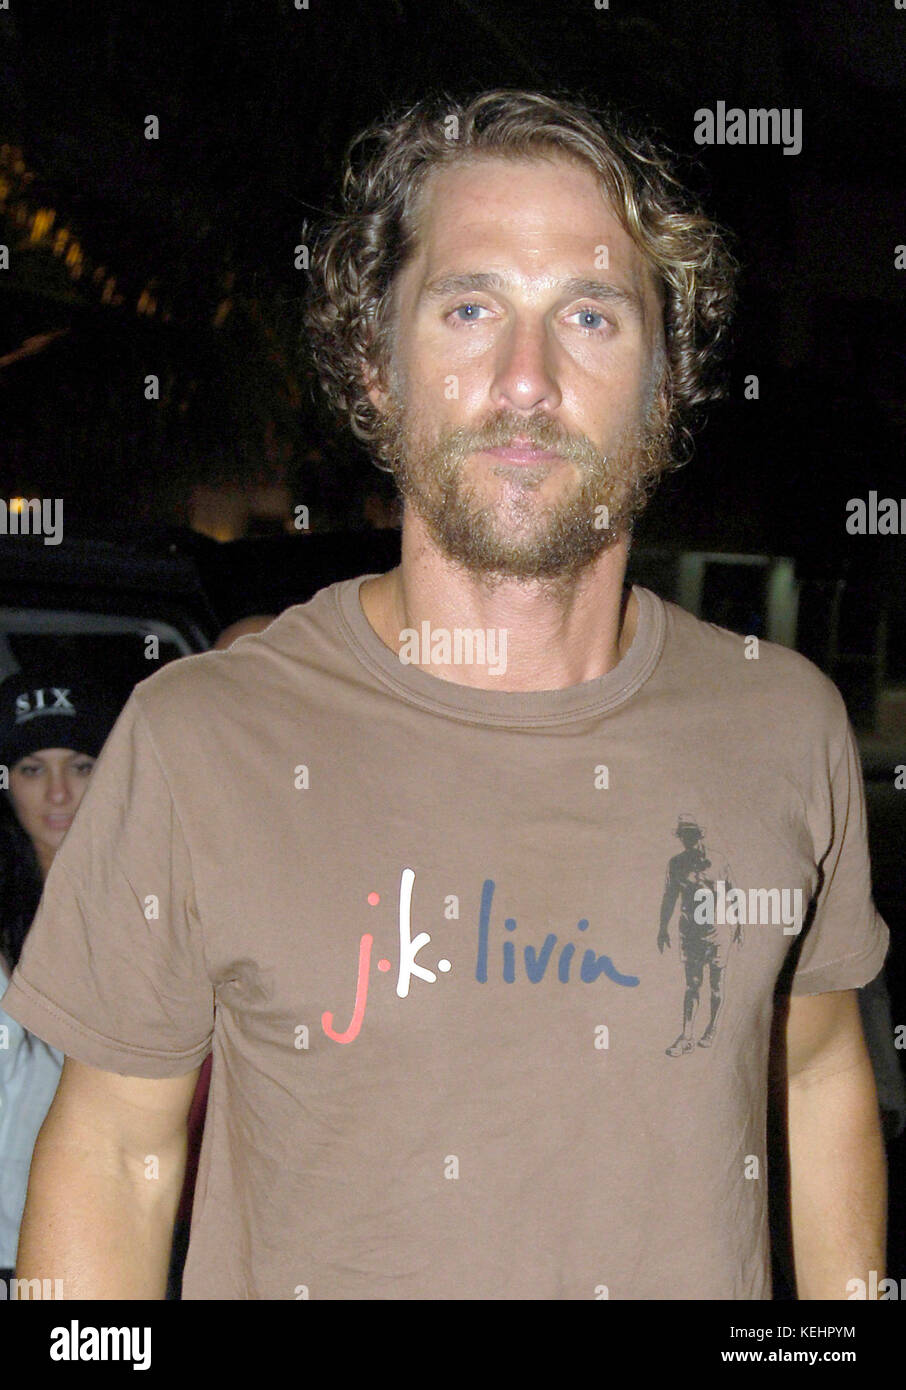 Miami, FL - 23 AOÛT : Matthew McConaughey vu le 23 août 2006 à Miami Beach, en Floride. Crédit: Hoo-me.com/MediaPunch Banque D'Images